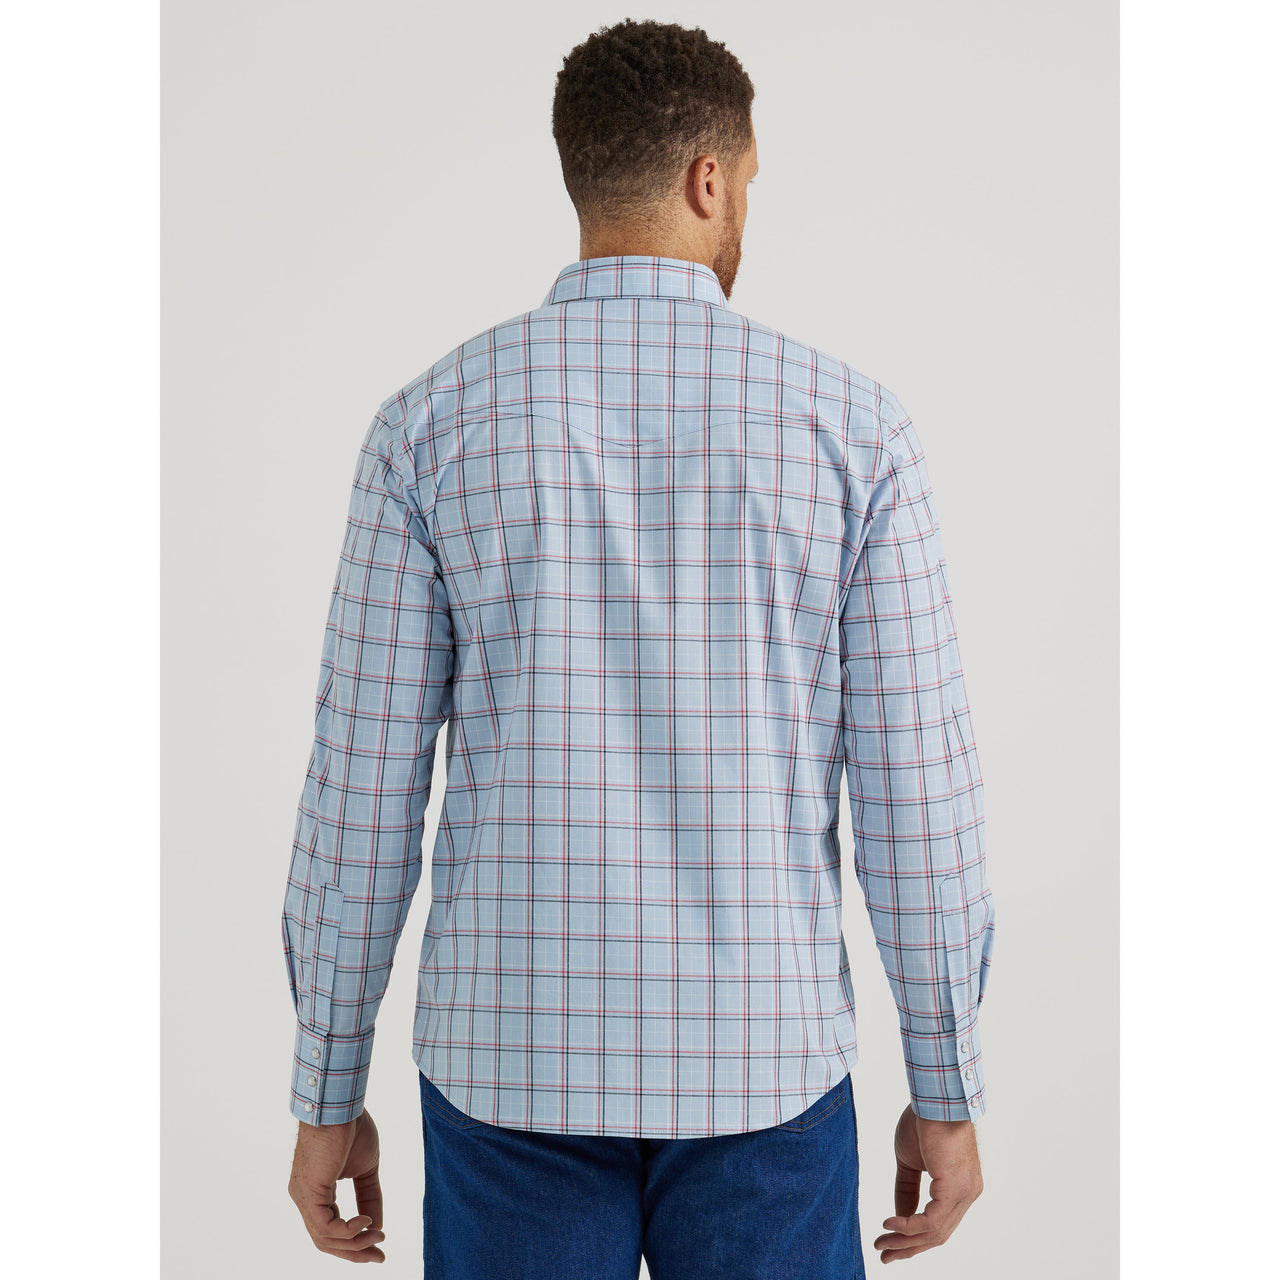 Wrangler Men's Wrinkle Resist Long Sleeve Plaid Shirt - Blue